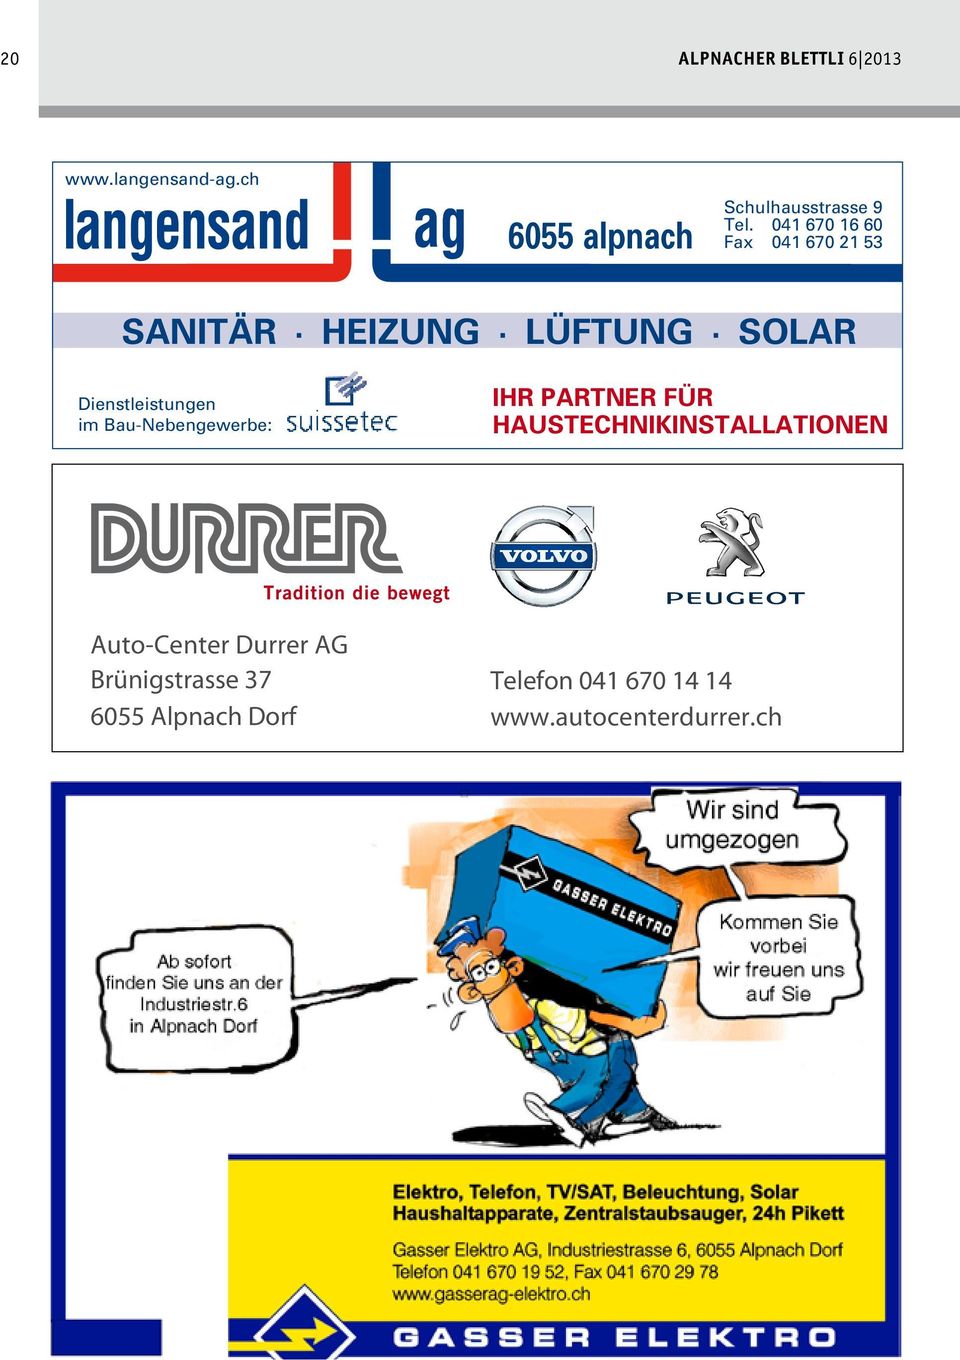 Partner für haustechnikinstallationen Auto-Center Auto-Center Durrer Durrer AG AG AG Brünigstrasse